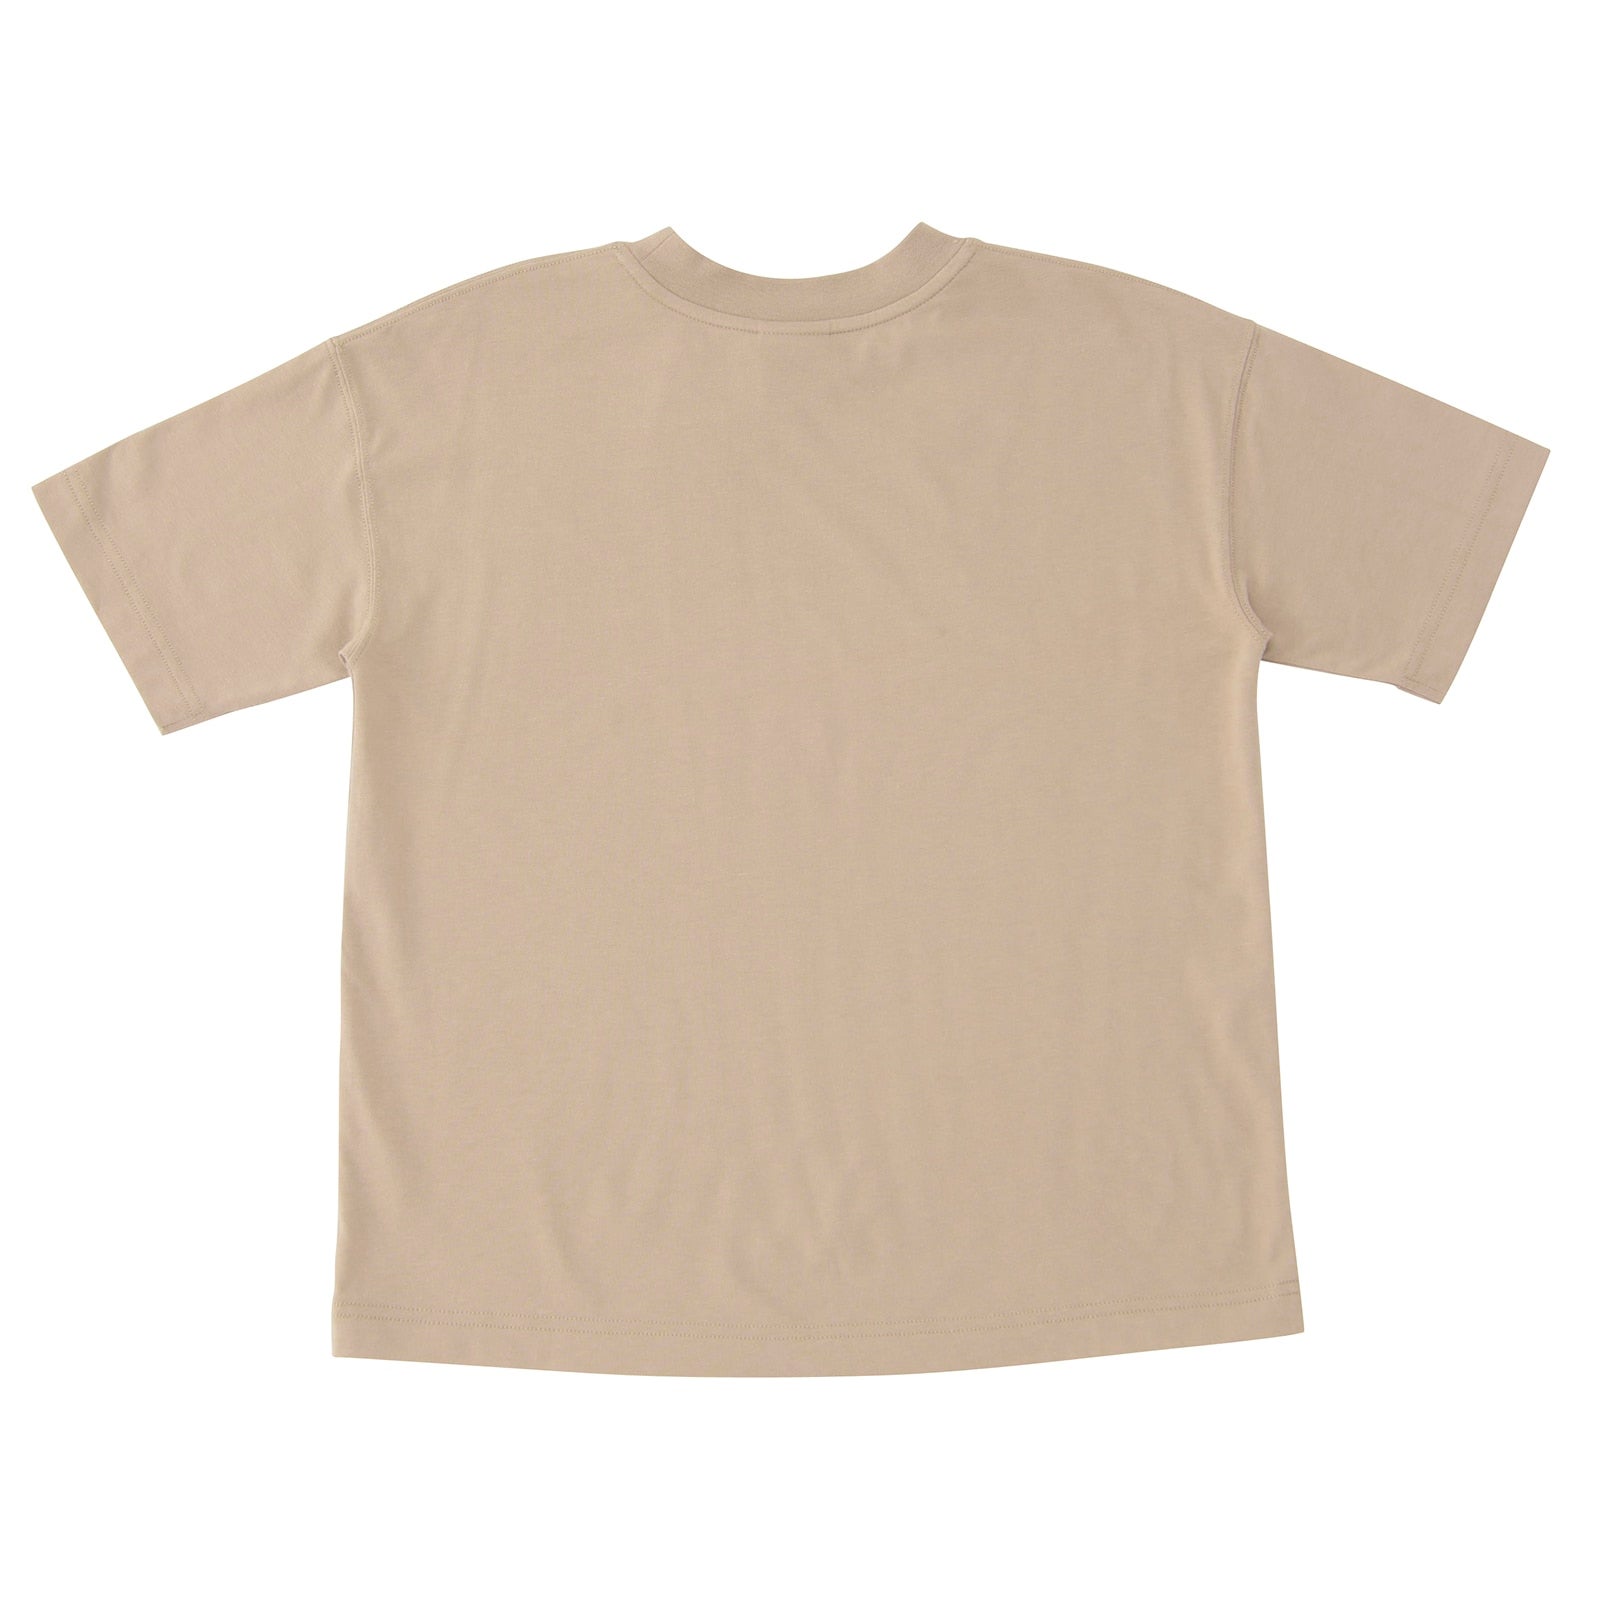 Moisture wicking Linear logo short sleeve T-shirt